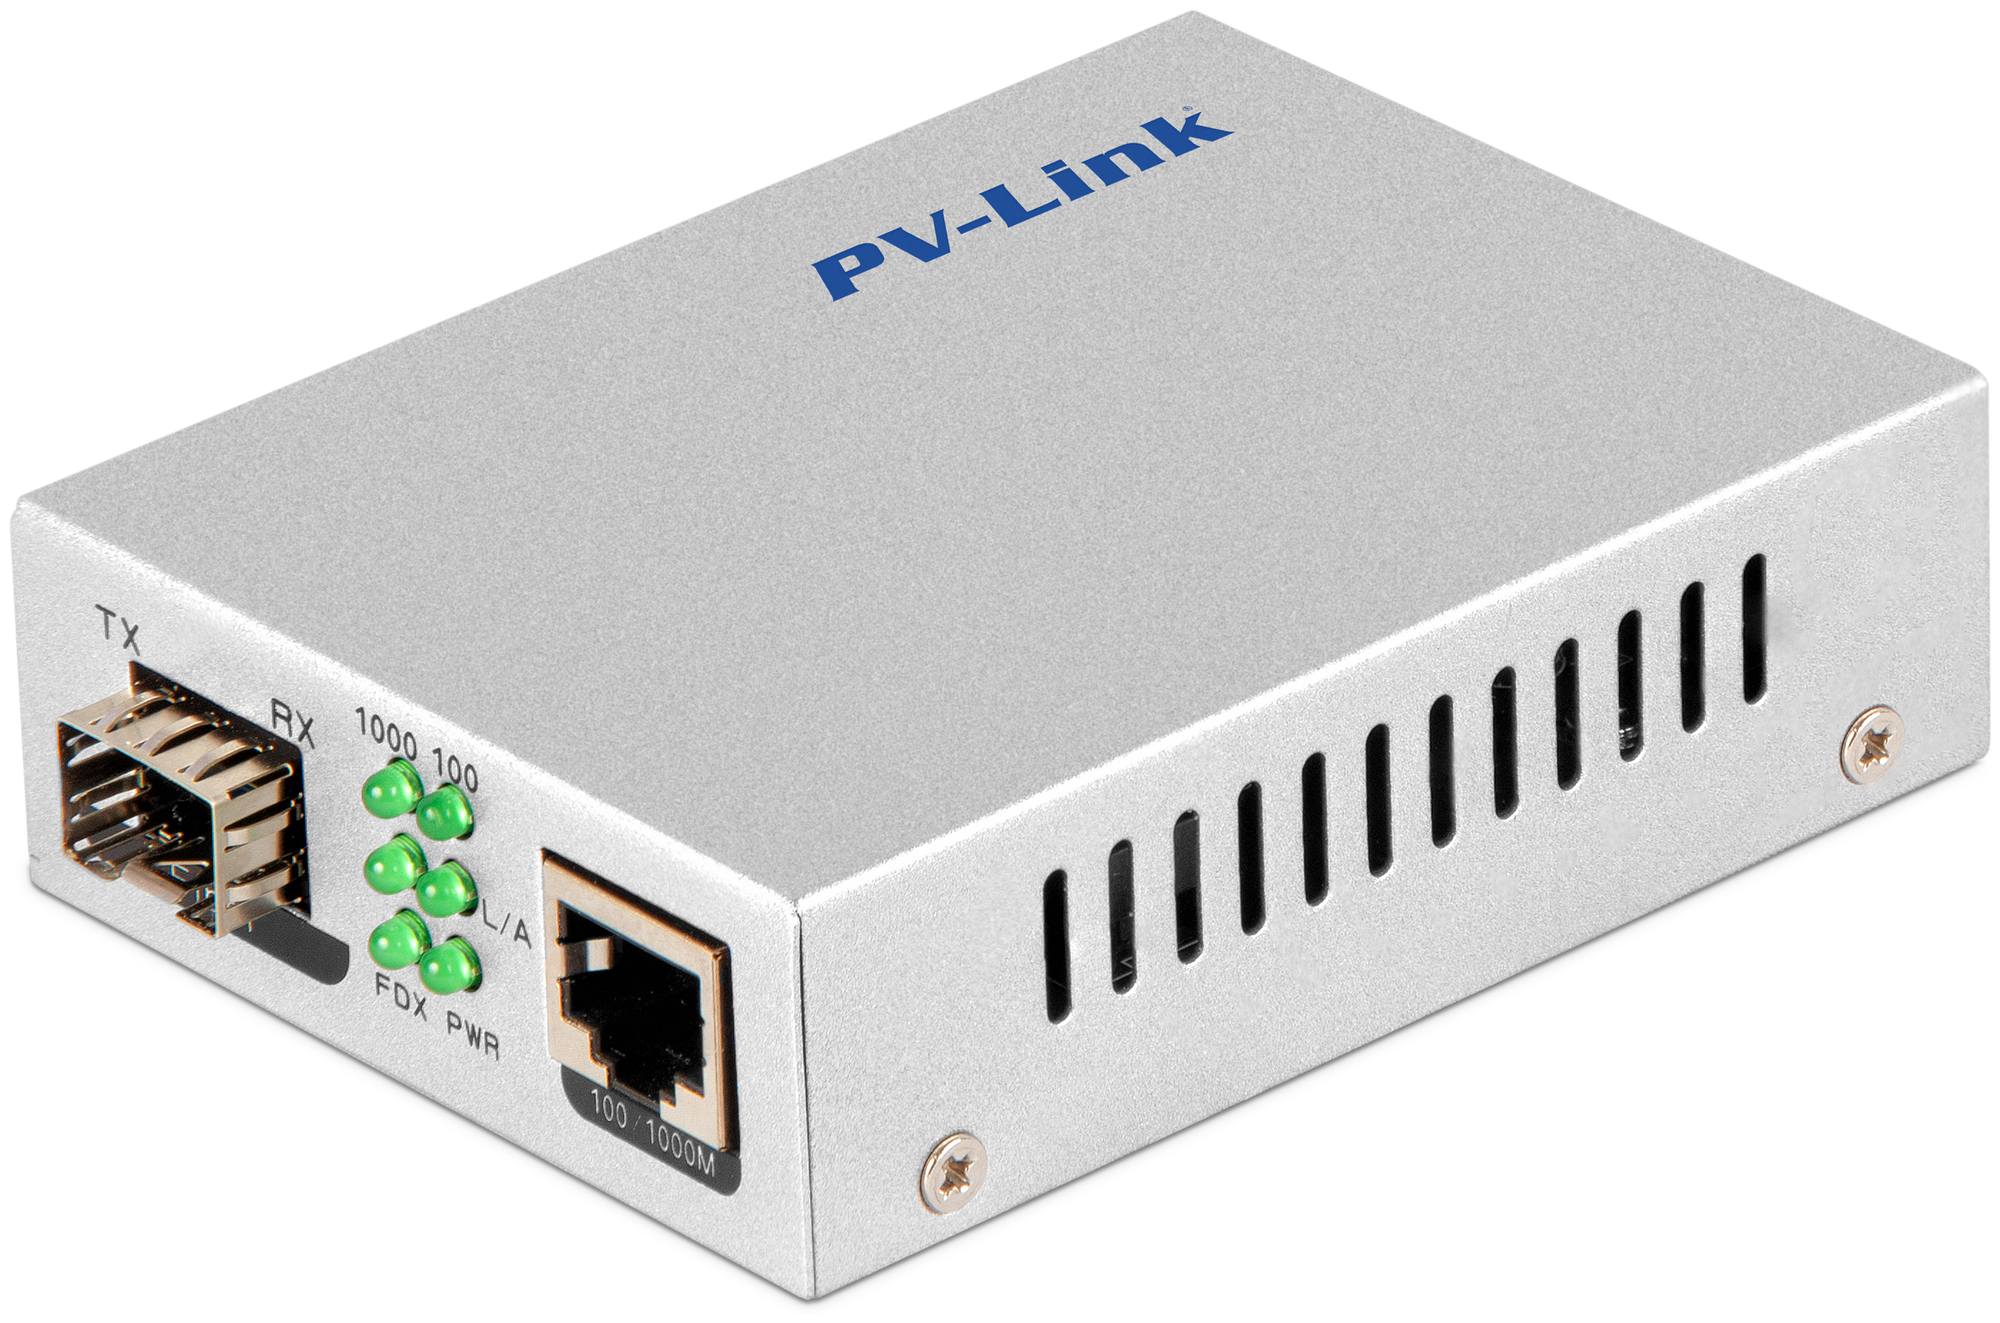 Медиаконвертер оптический PV-Link PV-MC01G 1000 Мбит/с для интернета